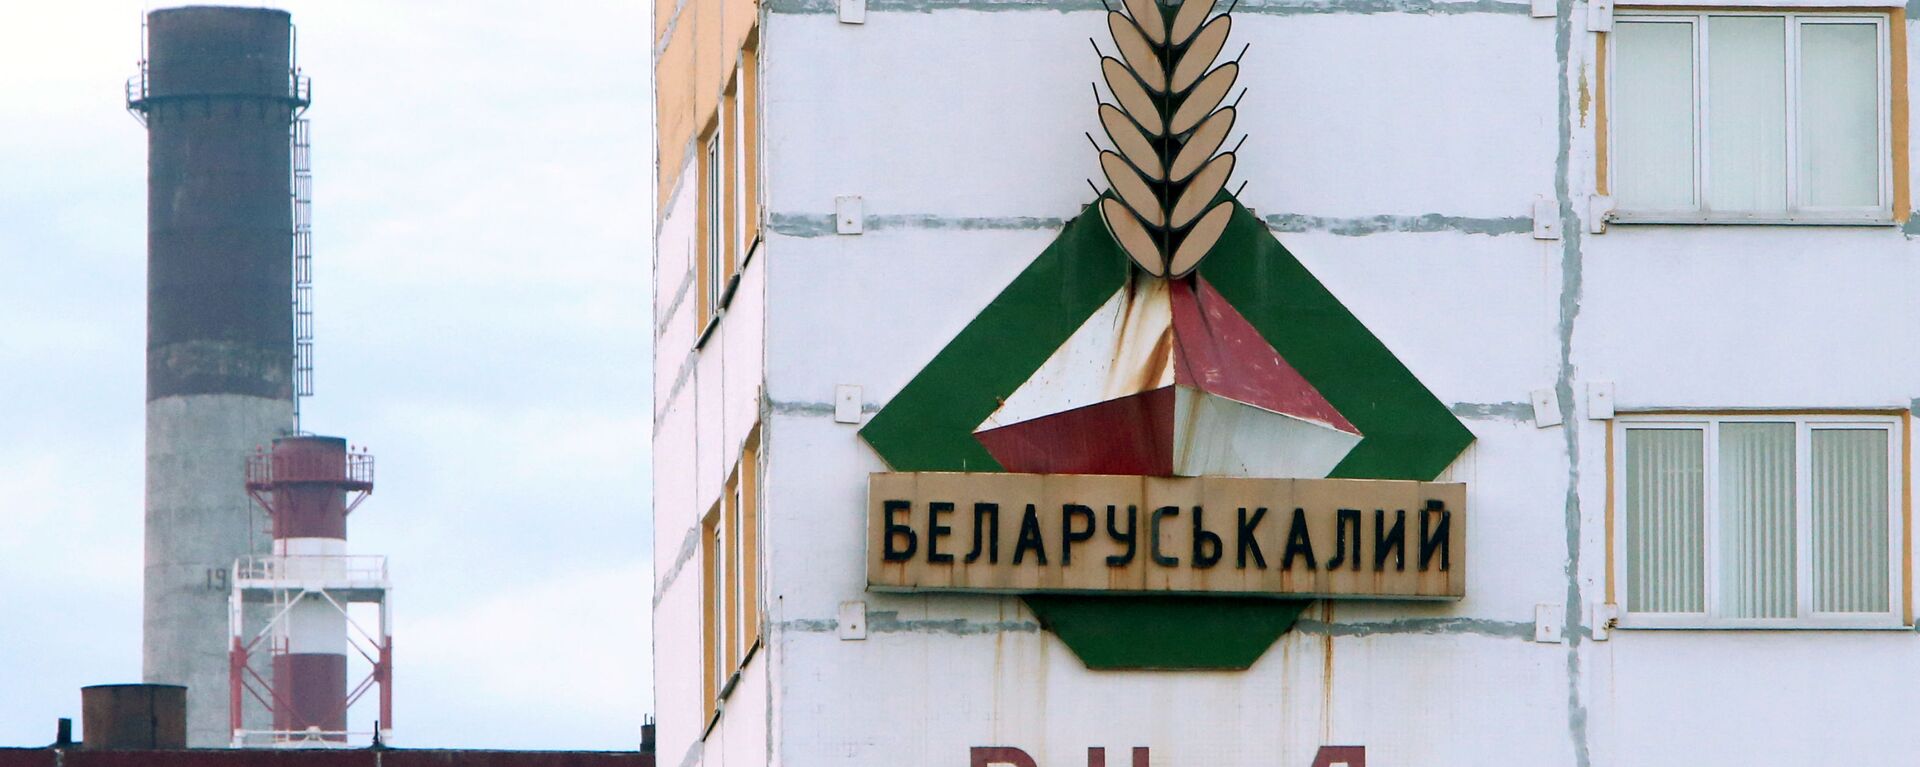 Беларуськалий остановил работу половины рудников - Sputnik Латвия, 1920, 09.06.2021